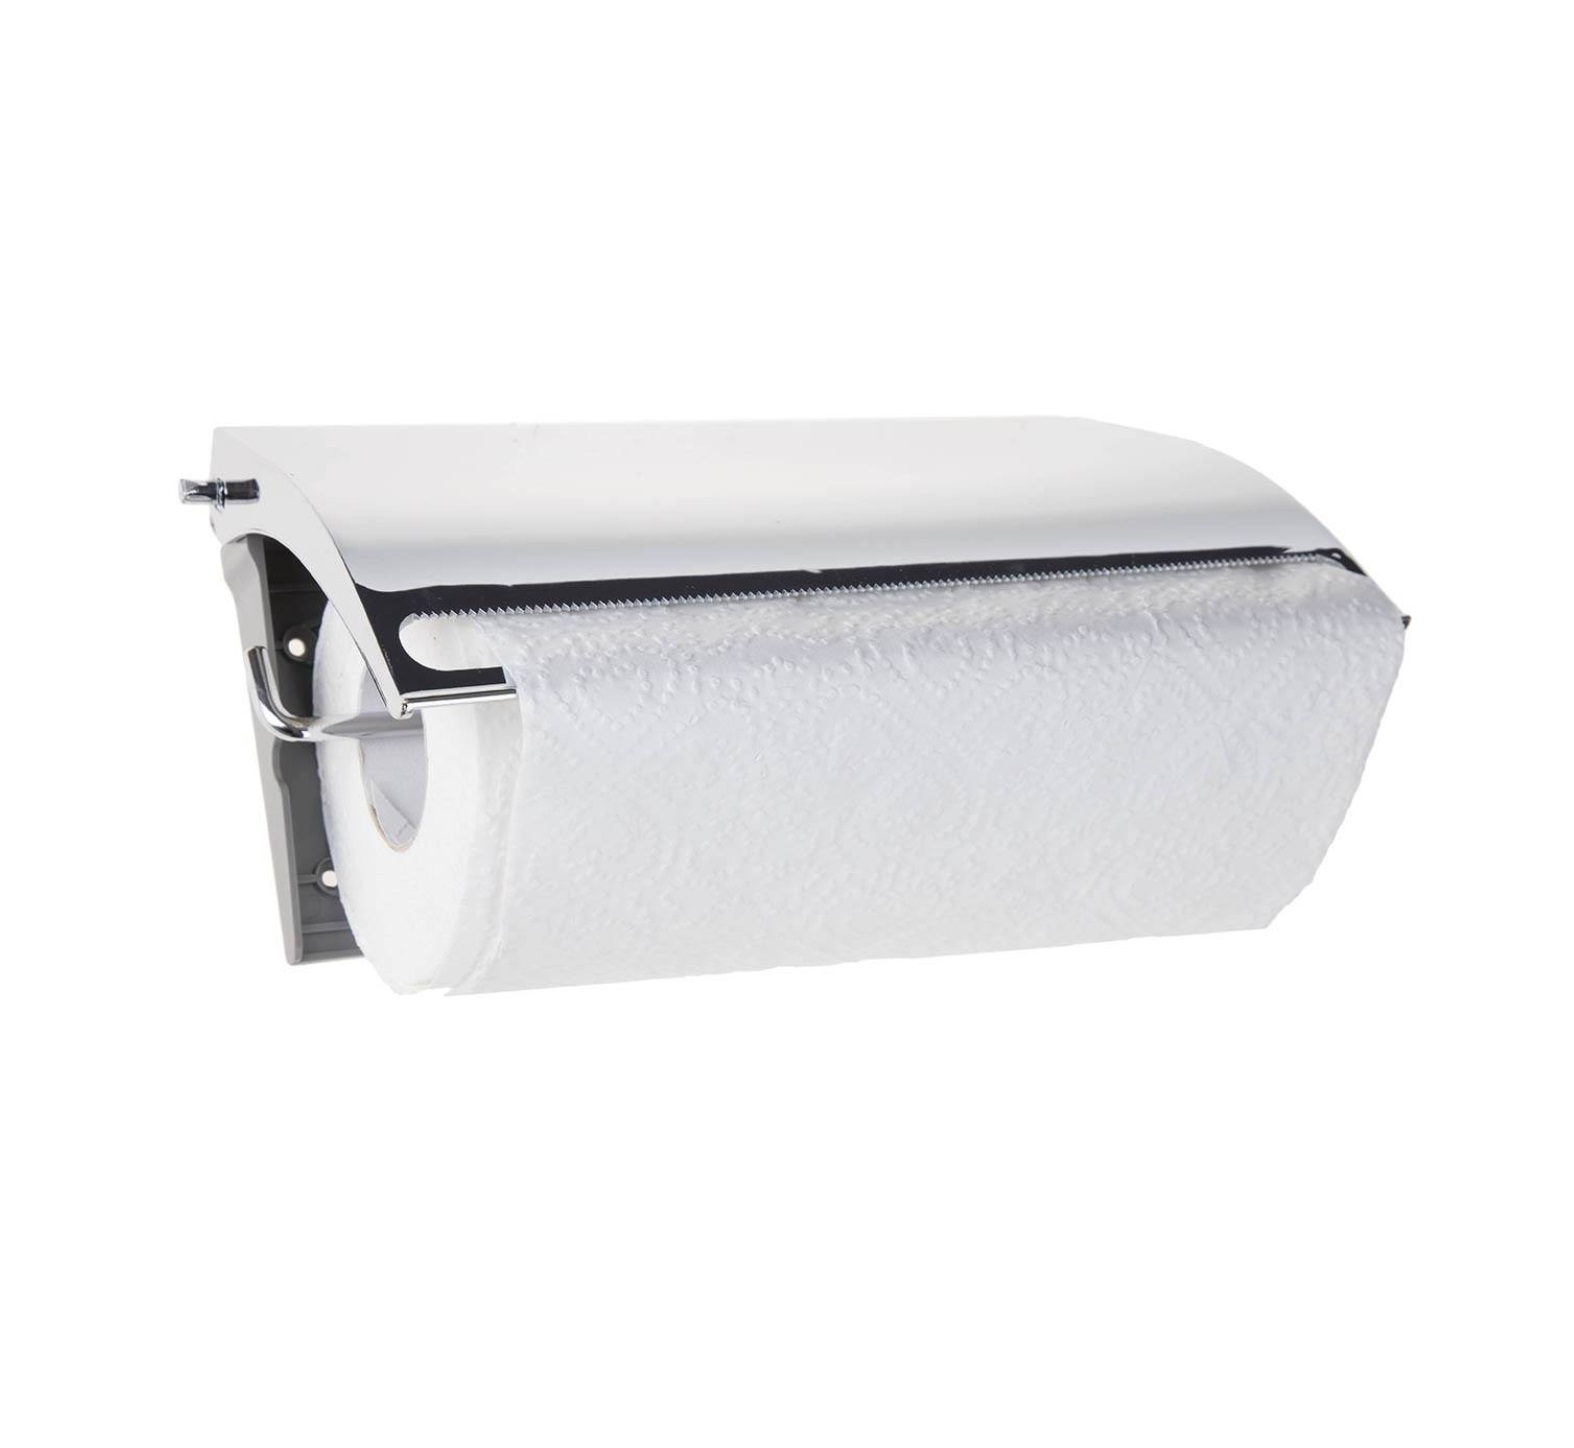 نگهدارنده دستمال کاغذی توالت سنی پلاستیک مدل TOOKA